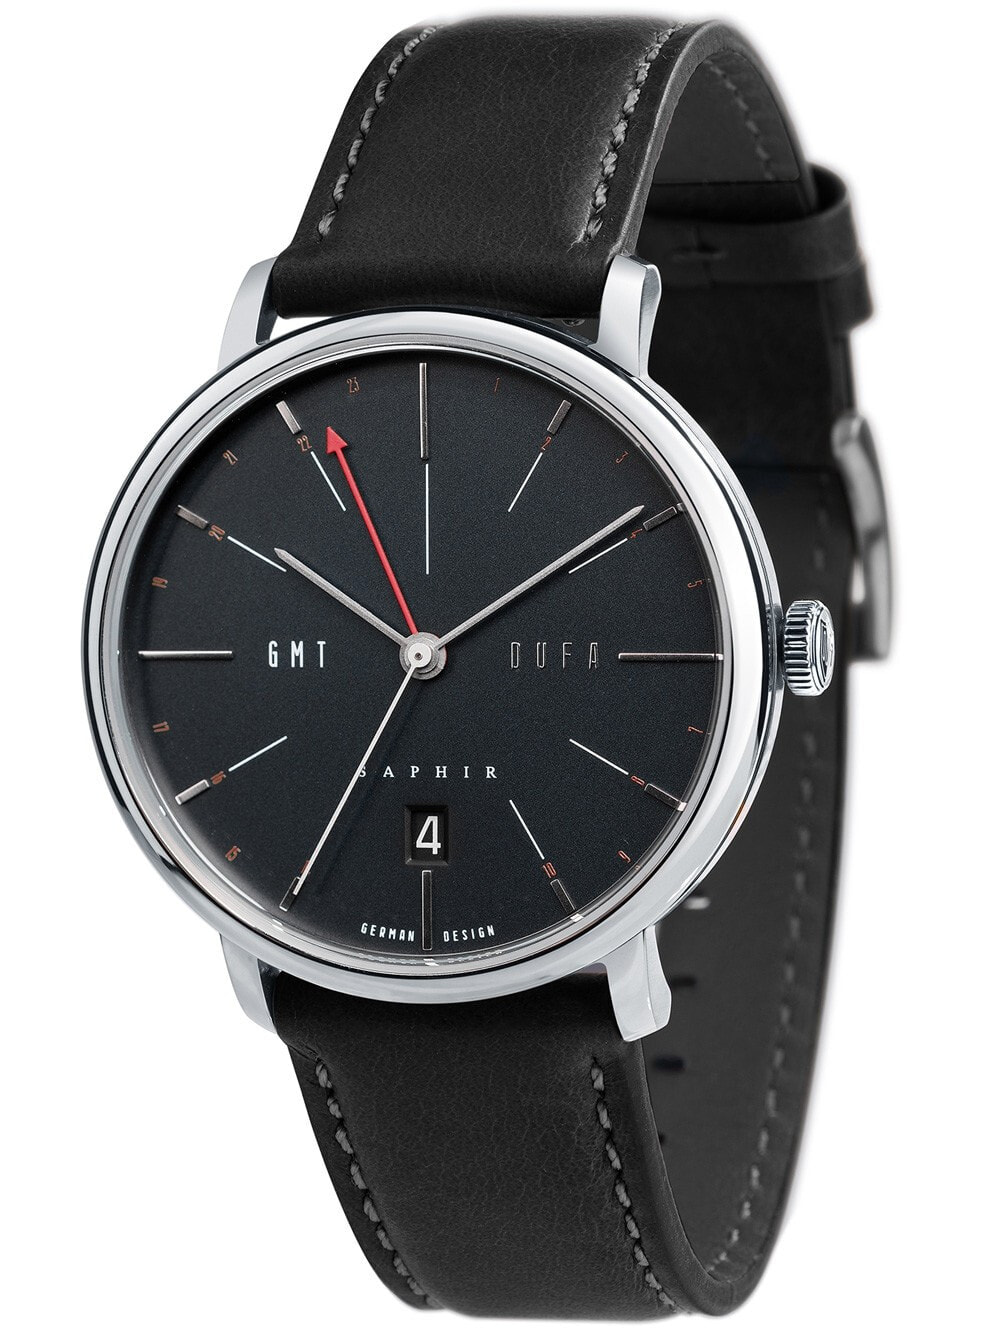 Мужские наручные часы с черным кожаным ремешком DuFa DF-9030-02 Sapphire Mens 40mm 3ATM